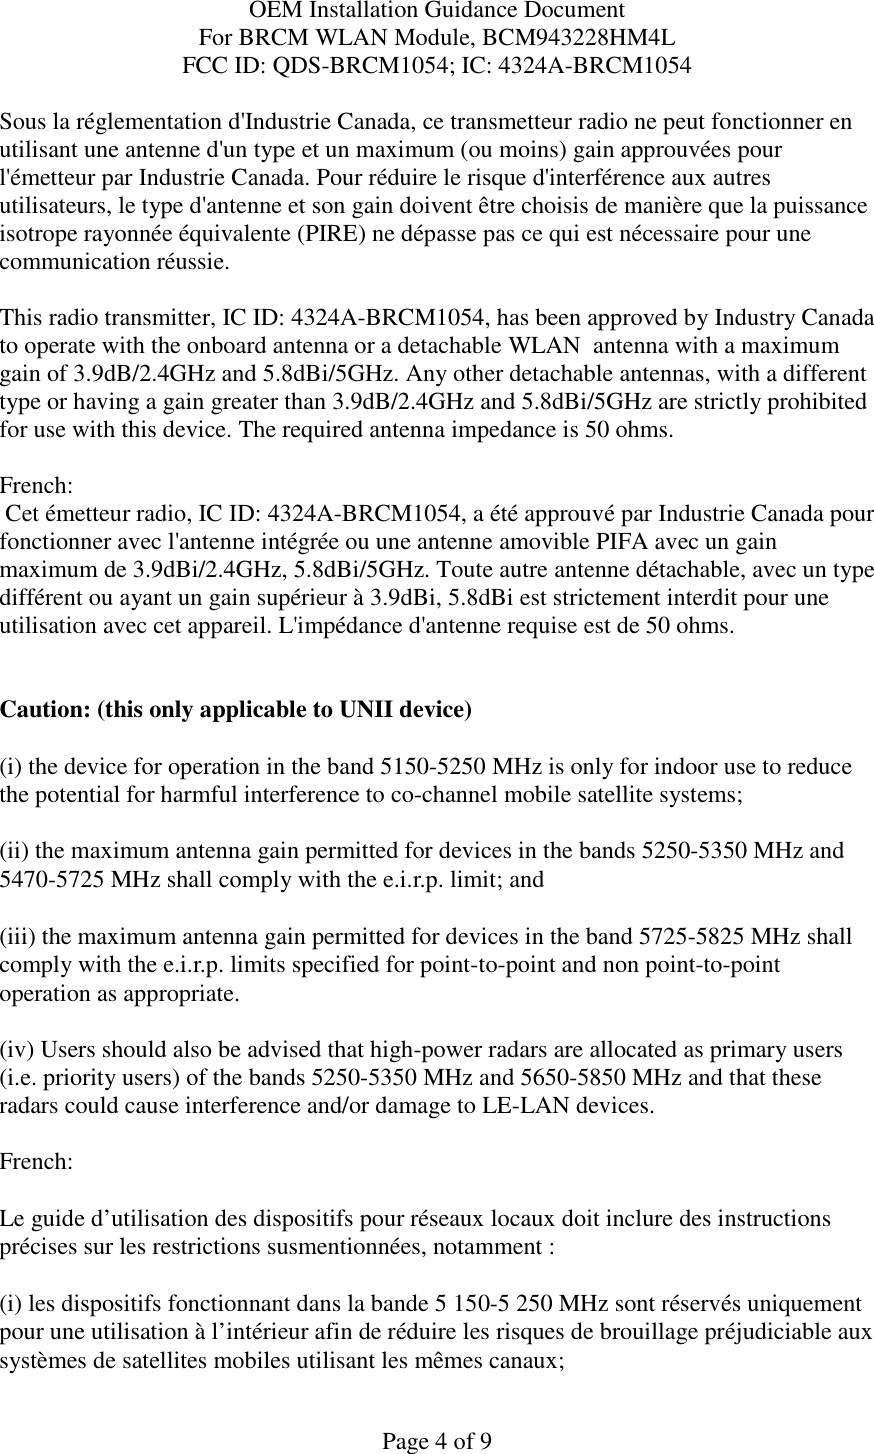 OEM Installation Guidance Document For BRCM WLAN Module, BCM943228HM4L FCC ID: QDS-BRCM1054; IC: 4324A-BRCM1054  Page 4 of 9 Sous la réglementation d&apos;Industrie Canada, ce transmetteur radio ne peut fonctionner en utilisant une antenne d&apos;un type et un maximum (ou moins) gain approuvées pour l&apos;émetteur par Industrie Canada. Pour réduire le risque d&apos;interférence aux autres utilisateurs, le type d&apos;antenne et son gain doivent être choisis de manière que la puissance isotrope rayonnée équivalente (PIRE) ne dépasse pas ce qui est nécessaire pour une communication réussie.  This radio transmitter, IC ID: 4324A-BRCM1054, has been approved by Industry Canada to operate with the onboard antenna or a detachable WLAN  antenna with a maximum gain of 3.9dB/2.4GHz and 5.8dBi/5GHz. Any other detachable antennas, with a different type or having a gain greater than 3.9dB/2.4GHz and 5.8dBi/5GHz are strictly prohibited for use with this device. The required antenna impedance is 50 ohms.  French:   Cet émetteur radio, IC ID: 4324A-BRCM1054, a été approuvé par Industrie Canada pour fonctionner avec l&apos;antenne intégrée ou une antenne amovible PIFA avec un gain maximum de 3.9dBi/2.4GHz, 5.8dBi/5GHz. Toute autre antenne détachable, avec un type différent ou ayant un gain supérieur à 3.9dBi, 5.8dBi est strictement interdit pour une utilisation avec cet appareil. L&apos;impédance d&apos;antenne requise est de 50 ohms.   Caution: (this only applicable to UNII device) (i) the device for operation in the band 5150-5250 MHz is only for indoor use to reduce the potential for harmful interference to co-channel mobile satellite systems; (ii) the maximum antenna gain permitted for devices in the bands 5250-5350 MHz and 5470-5725 MHz shall comply with the e.i.r.p. limit; and (iii) the maximum antenna gain permitted for devices in the band 5725-5825 MHz shall comply with the e.i.r.p. limits specified for point-to-point and non point-to-point operation as appropriate. (iv) Users should also be advised that high-power radars are allocated as primary users (i.e. priority users) of the bands 5250-5350 MHz and 5650-5850 MHz and that these radars could cause interference and/or damage to LE-LAN devices.  French:  Le guide d’utilisation des dispositifs pour réseaux locaux doit inclure des instructions précises sur les restrictions susmentionnées, notamment : (i) les dispositifs fonctionnant dans la bande 5 150-5 250 MHz sont réservés uniquement pour une utilisation à l’intérieur afin de réduire les risques de brouillage préjudiciable aux systèmes de satellites mobiles utilisant les mêmes canaux; 